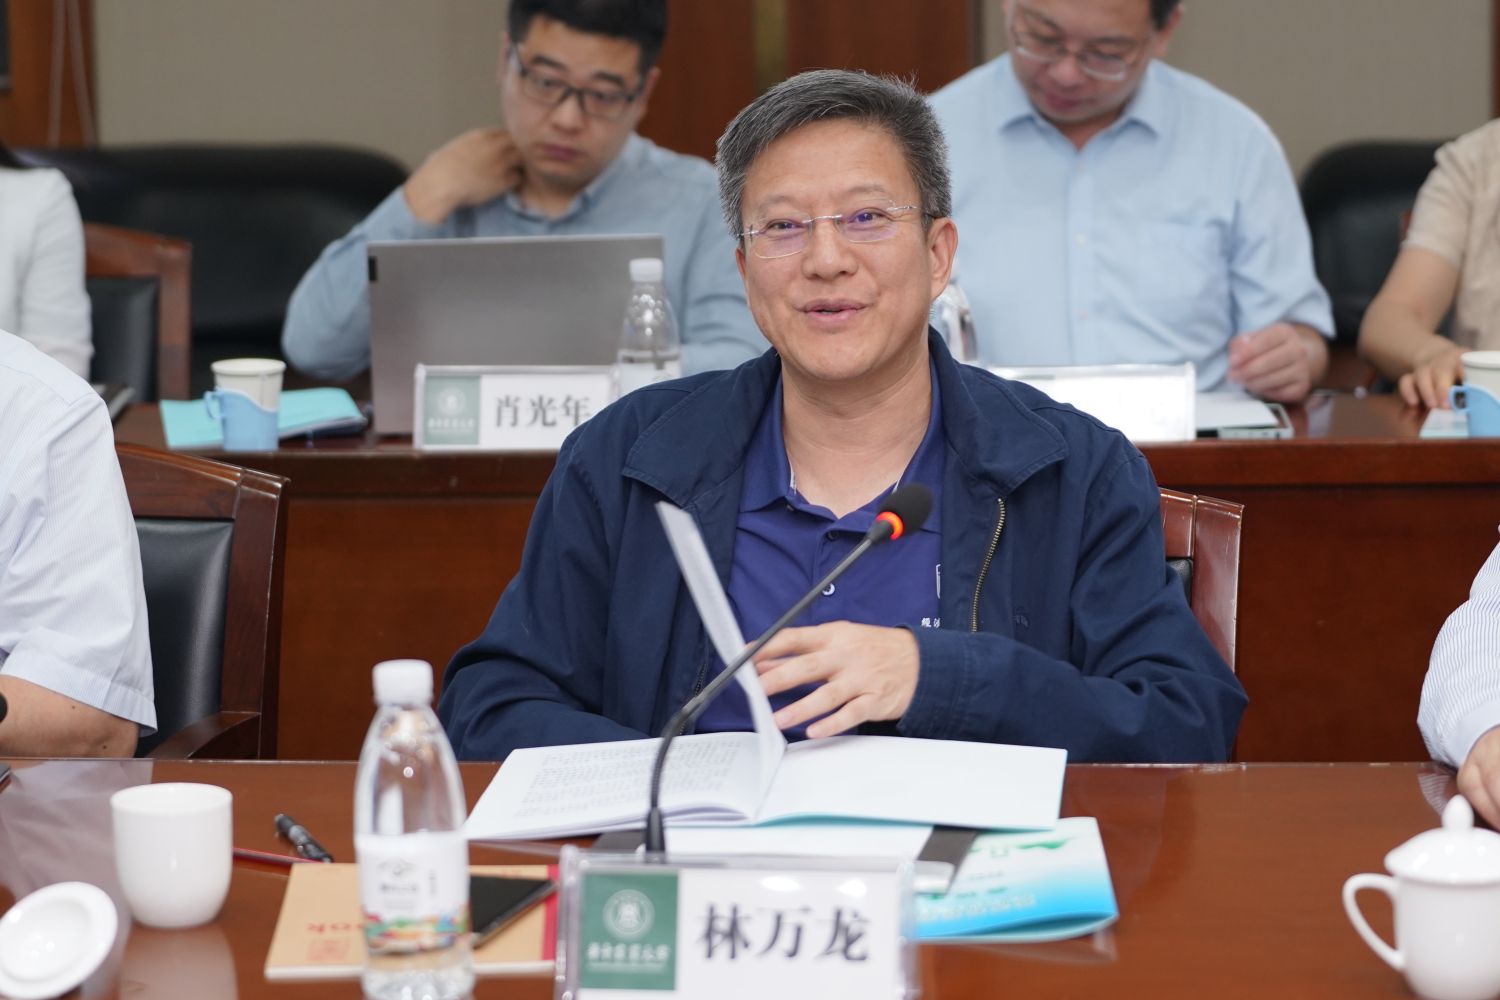 中国农业大学副校长林万龙主持会议